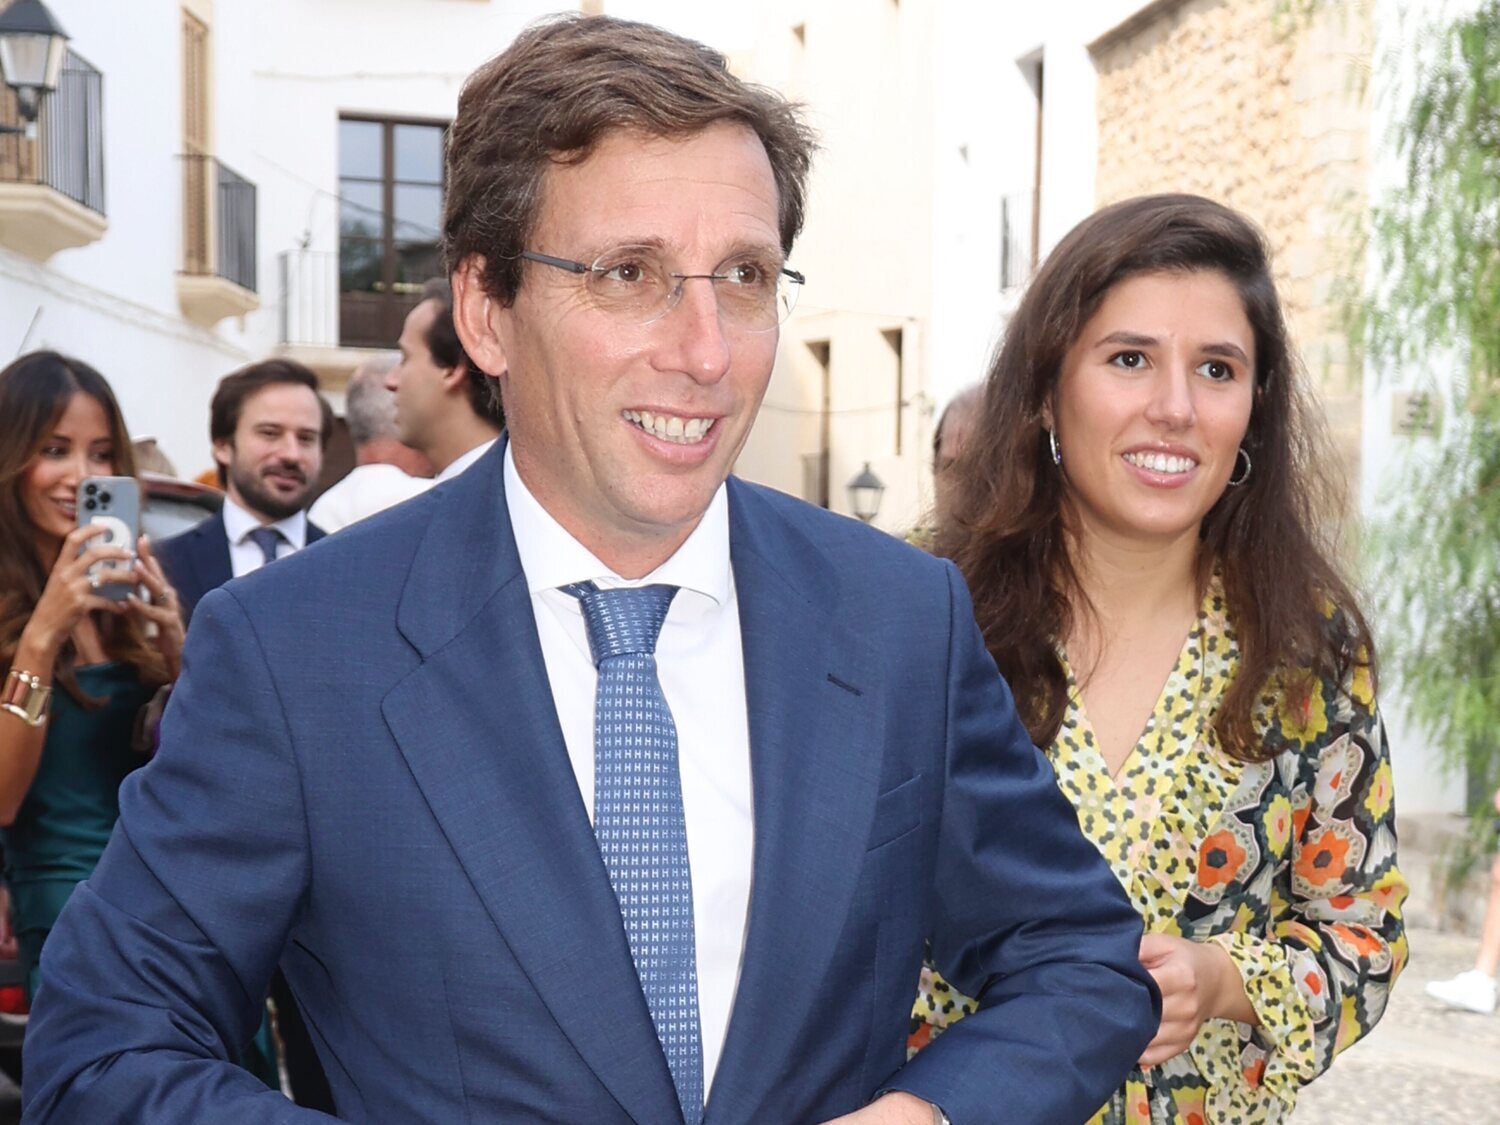 La lista de regalos de la boda de Almeida valorada en más de 85.000 euros